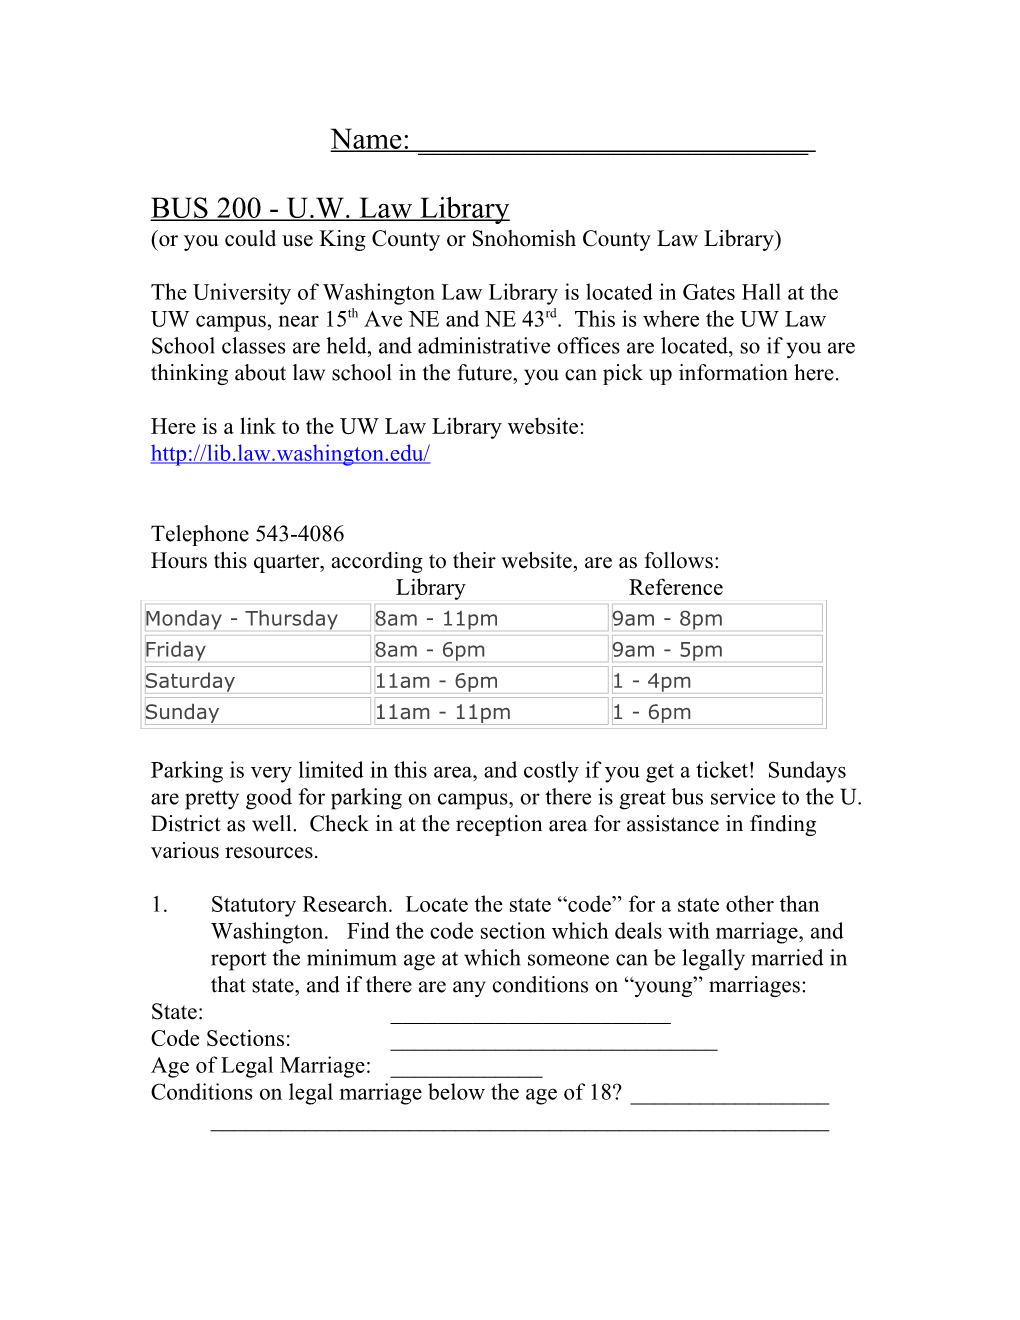 BUS 200 - U.W. Law Library